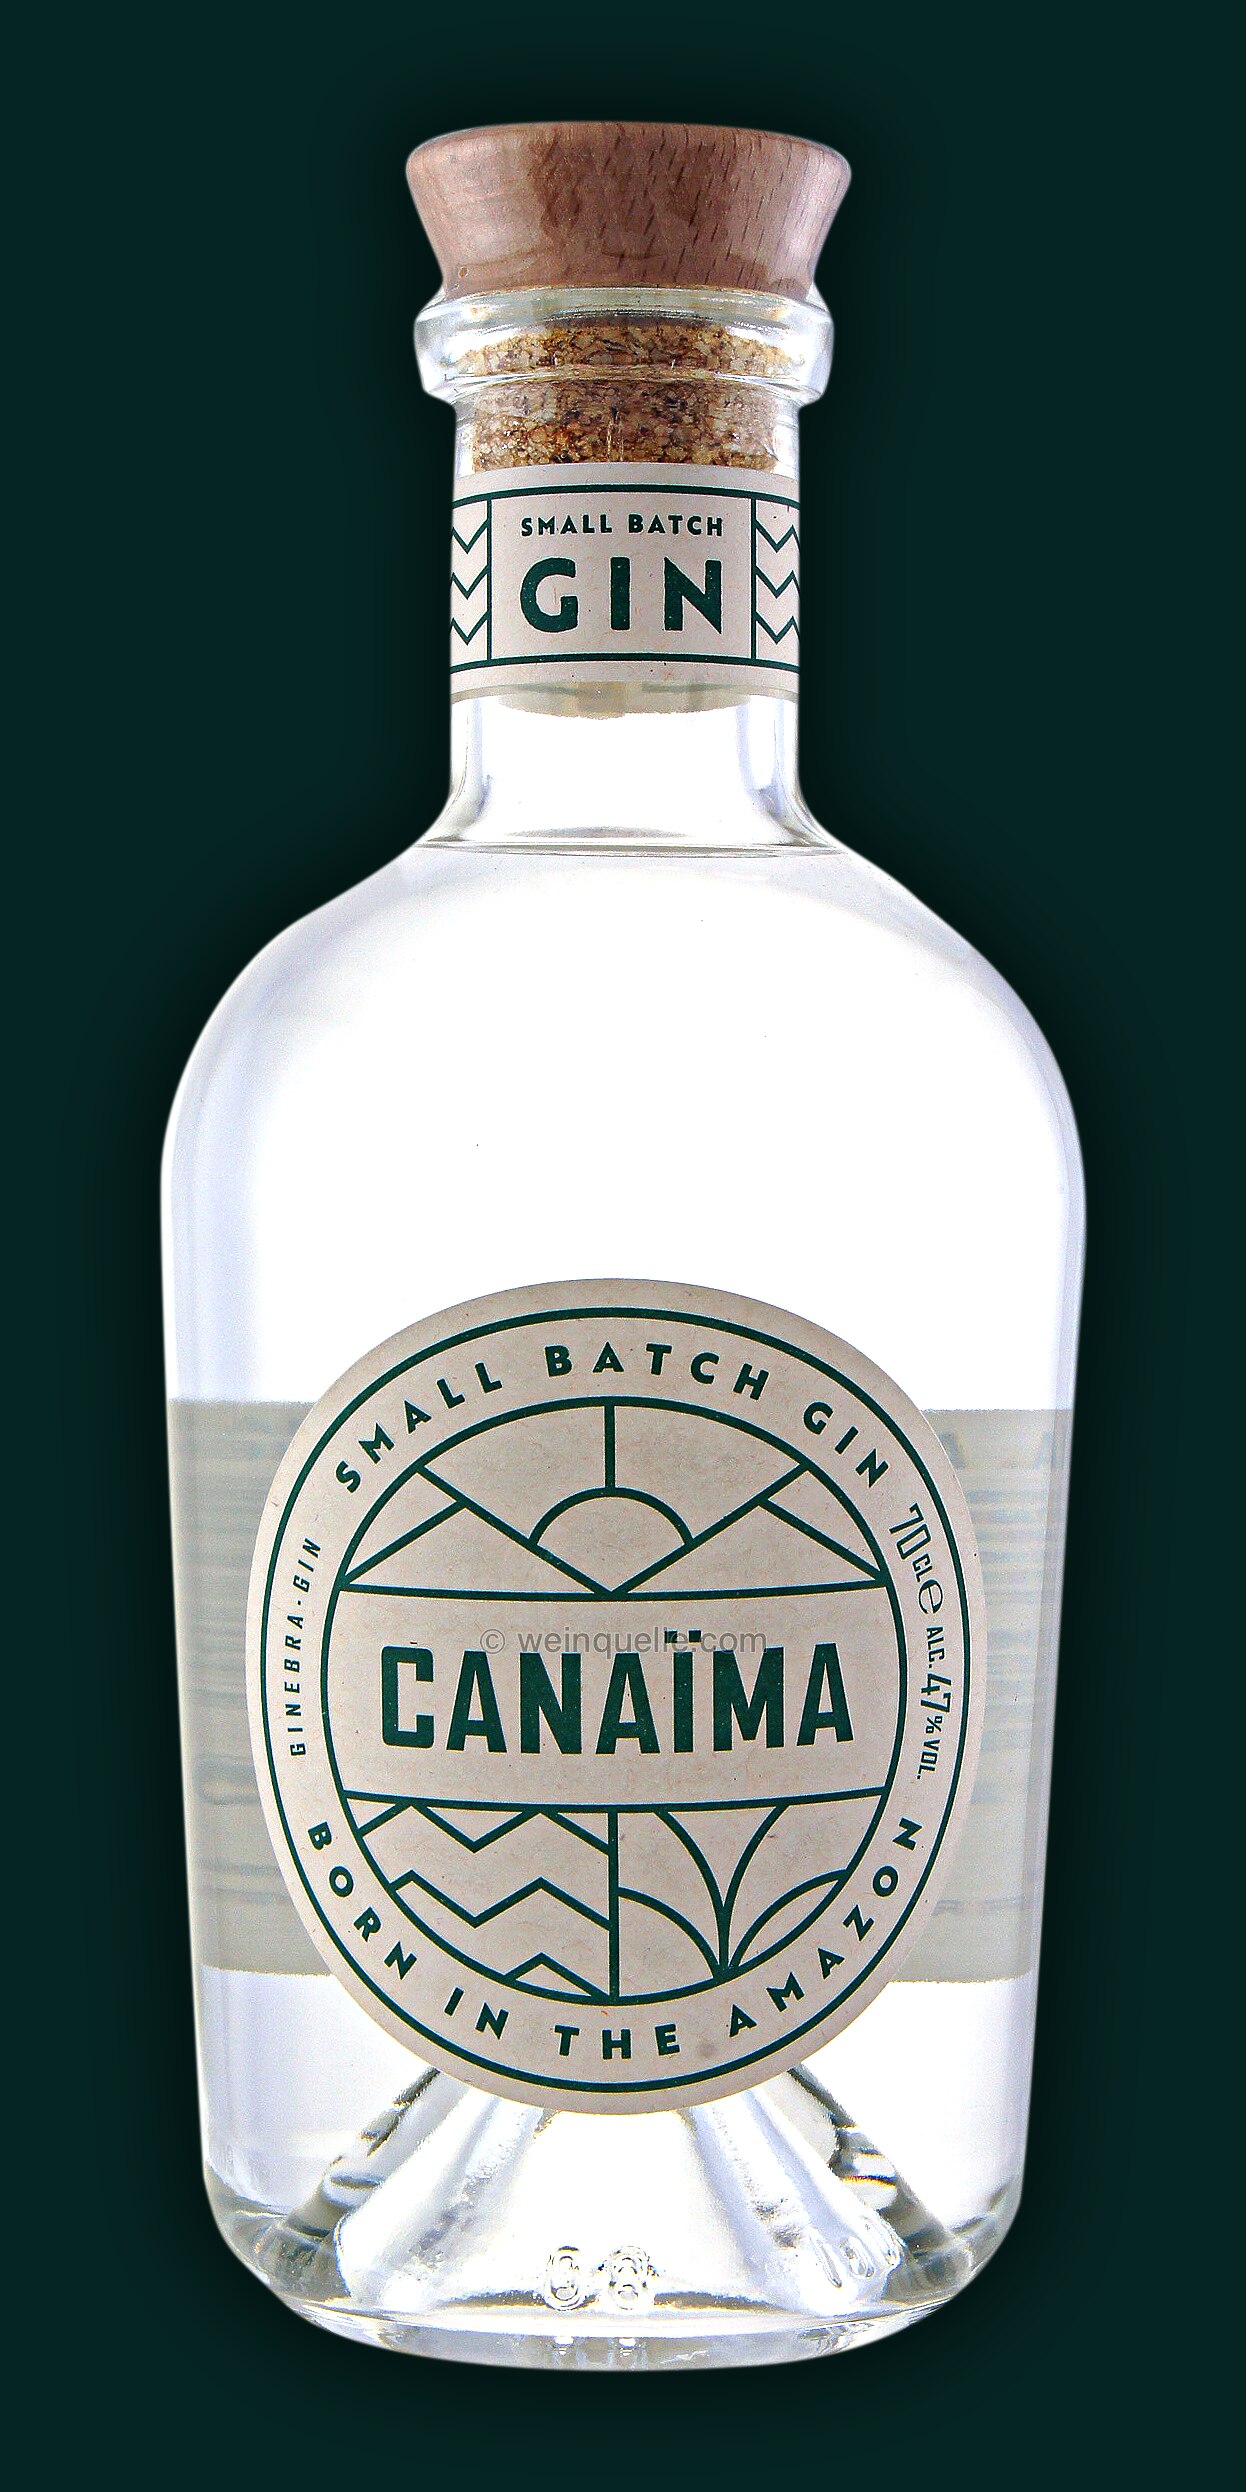 Canaima Small Batch Gin, 31,90 Weinquelle € Lühmann 